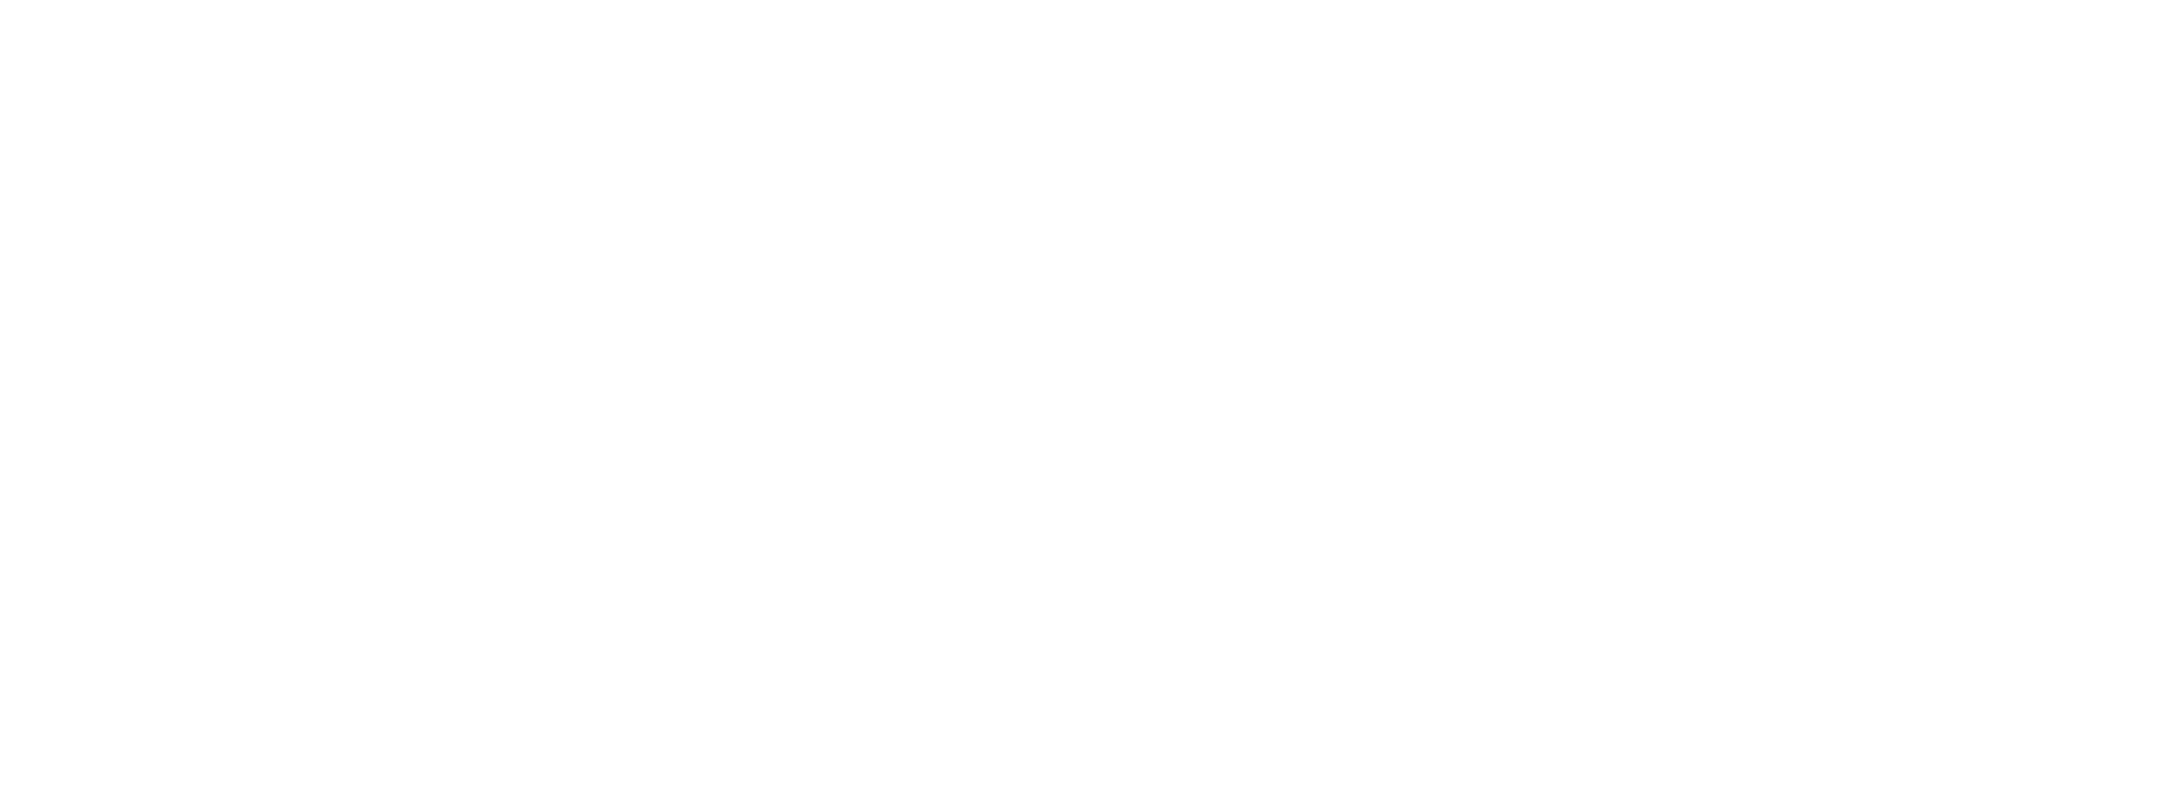 Sixstars2u.com.my